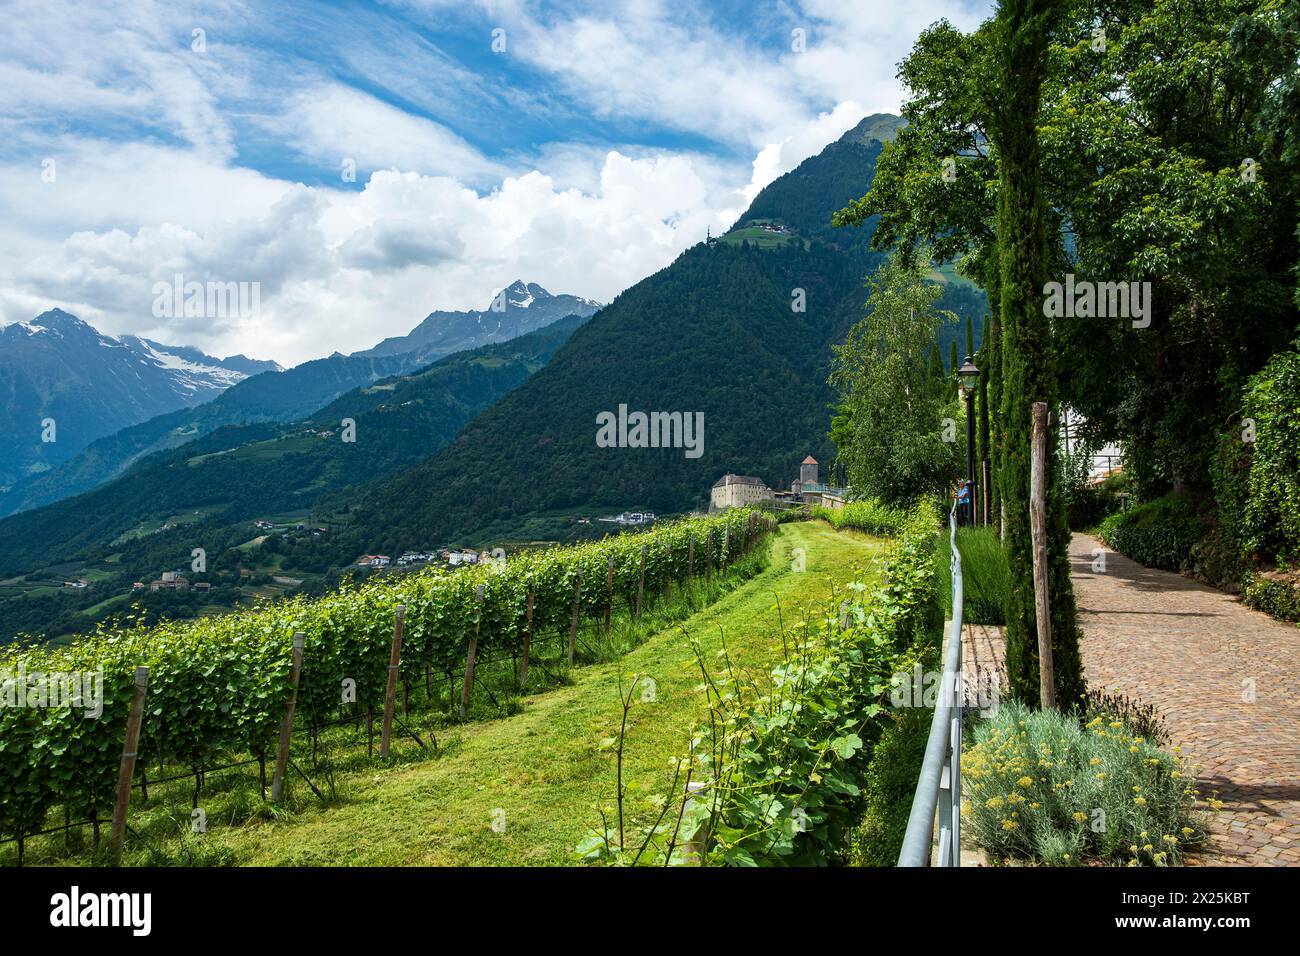 Schloss Tirol vom Dorf Tirol aus gesehen, mittelalterliche Ahnenburg der Grafen von Tirol bei Meran, Burgraviato, Südtirol, Italien. Stockfoto